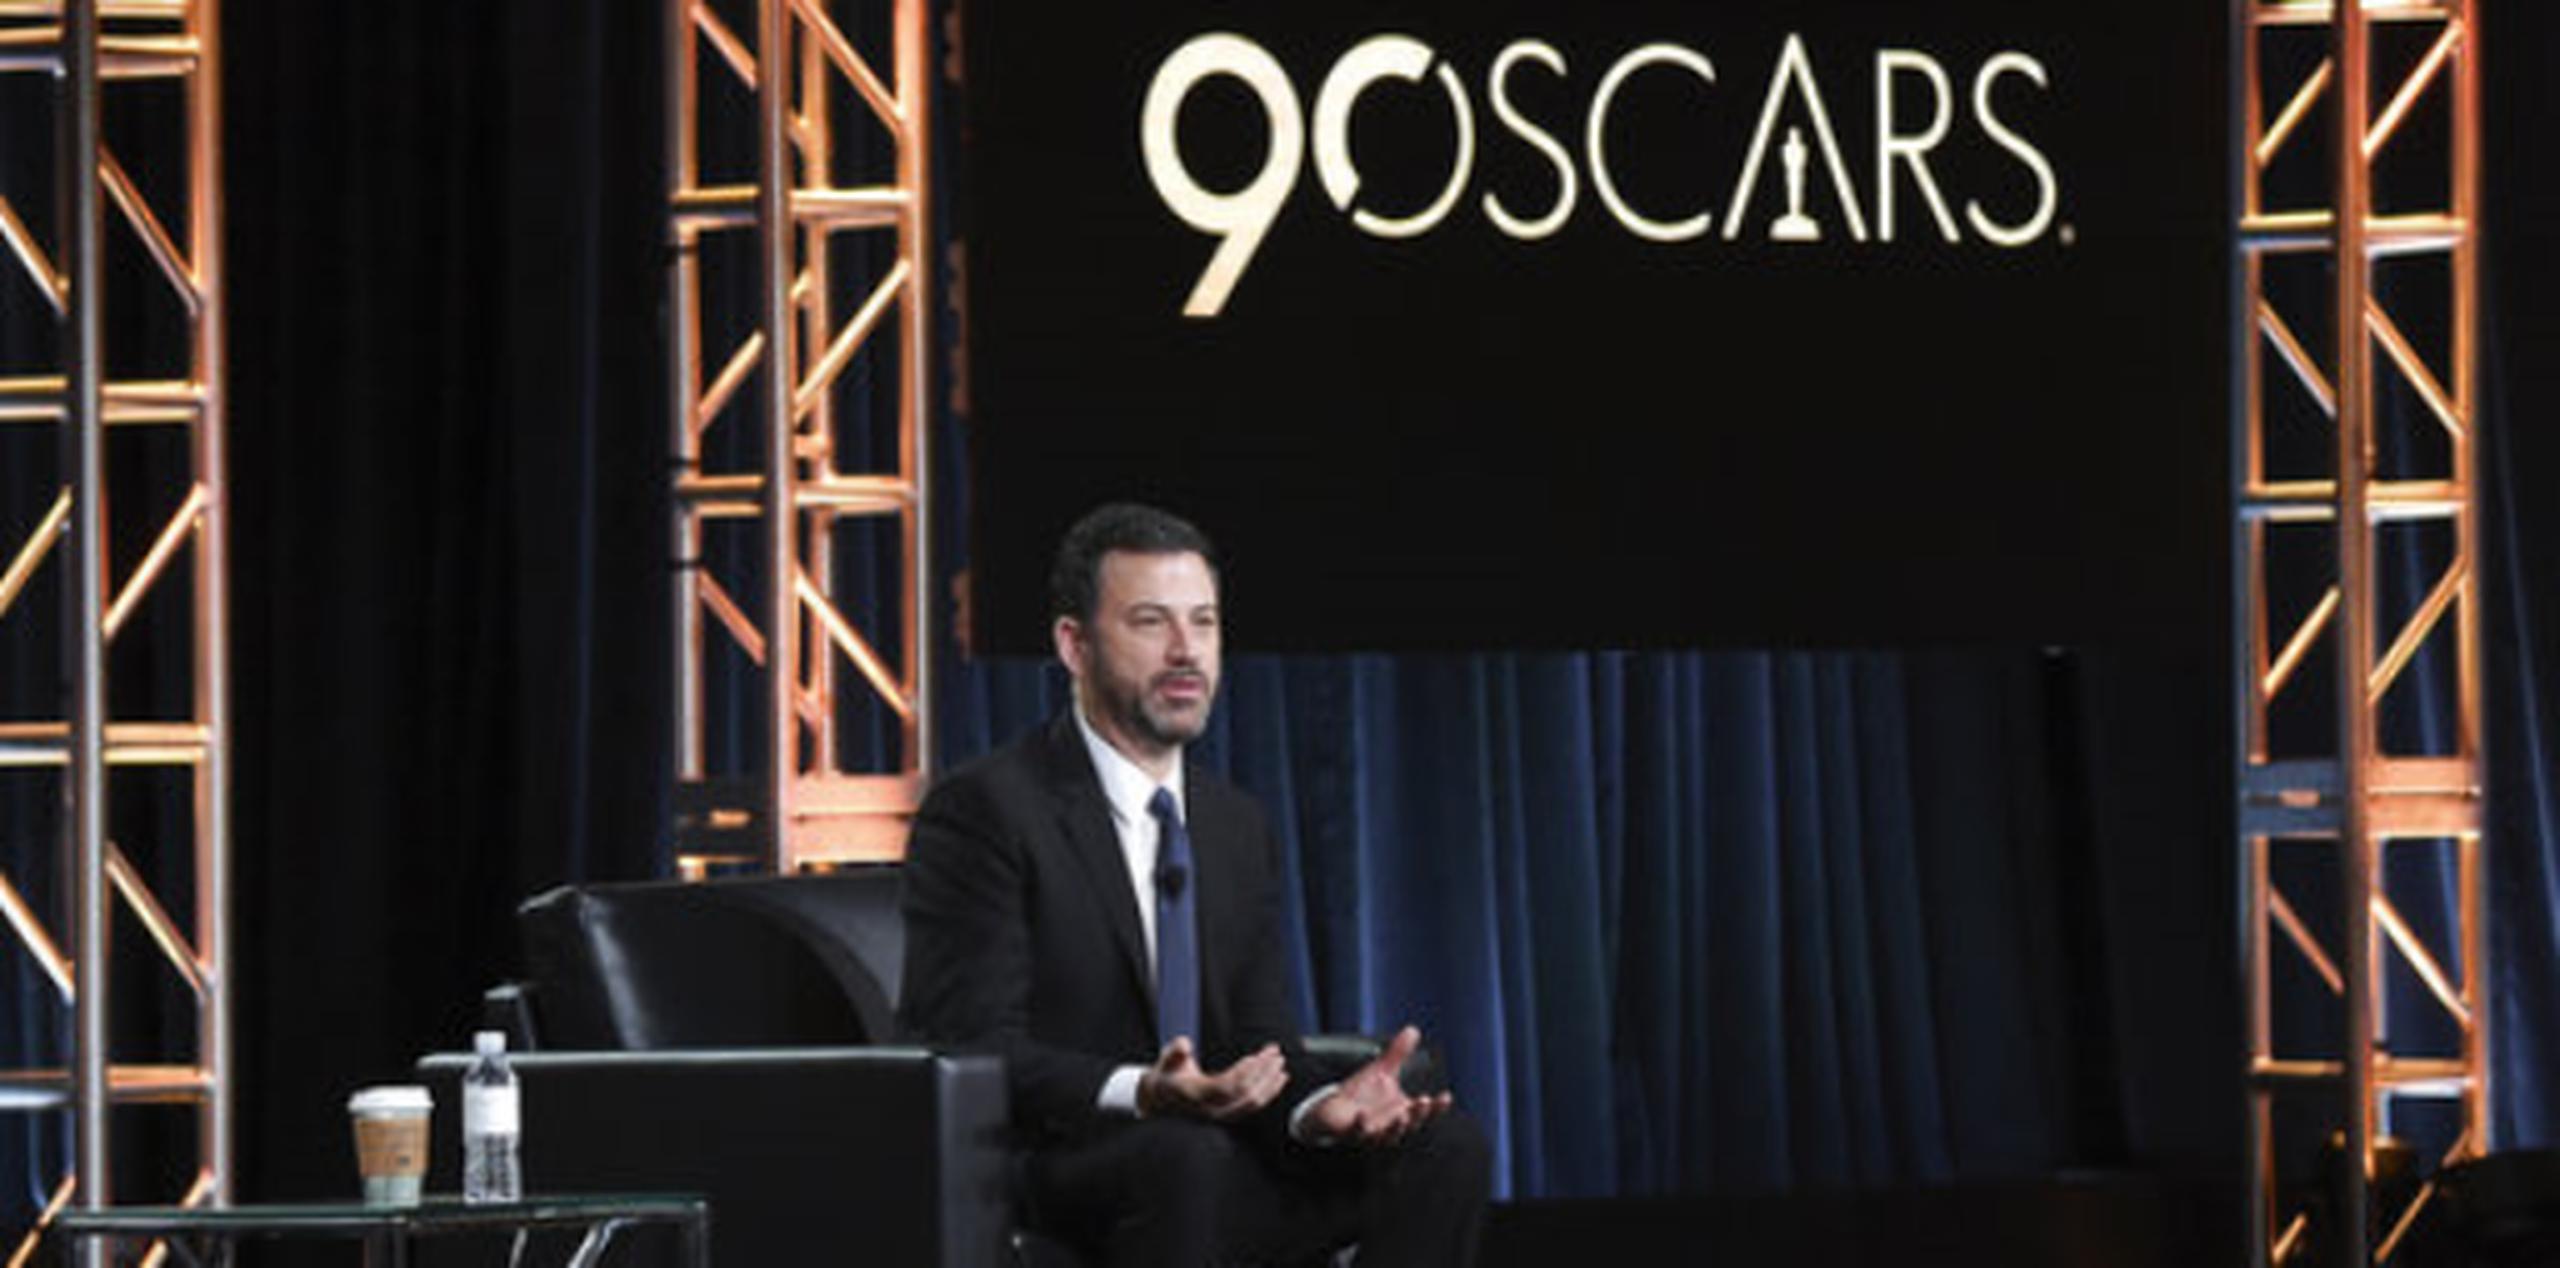 Todo apunta a que Kimmel recordará con humor lo sucedido en 2017, tal y como se ha visto en un anuncio previo de los Oscar. (AP)